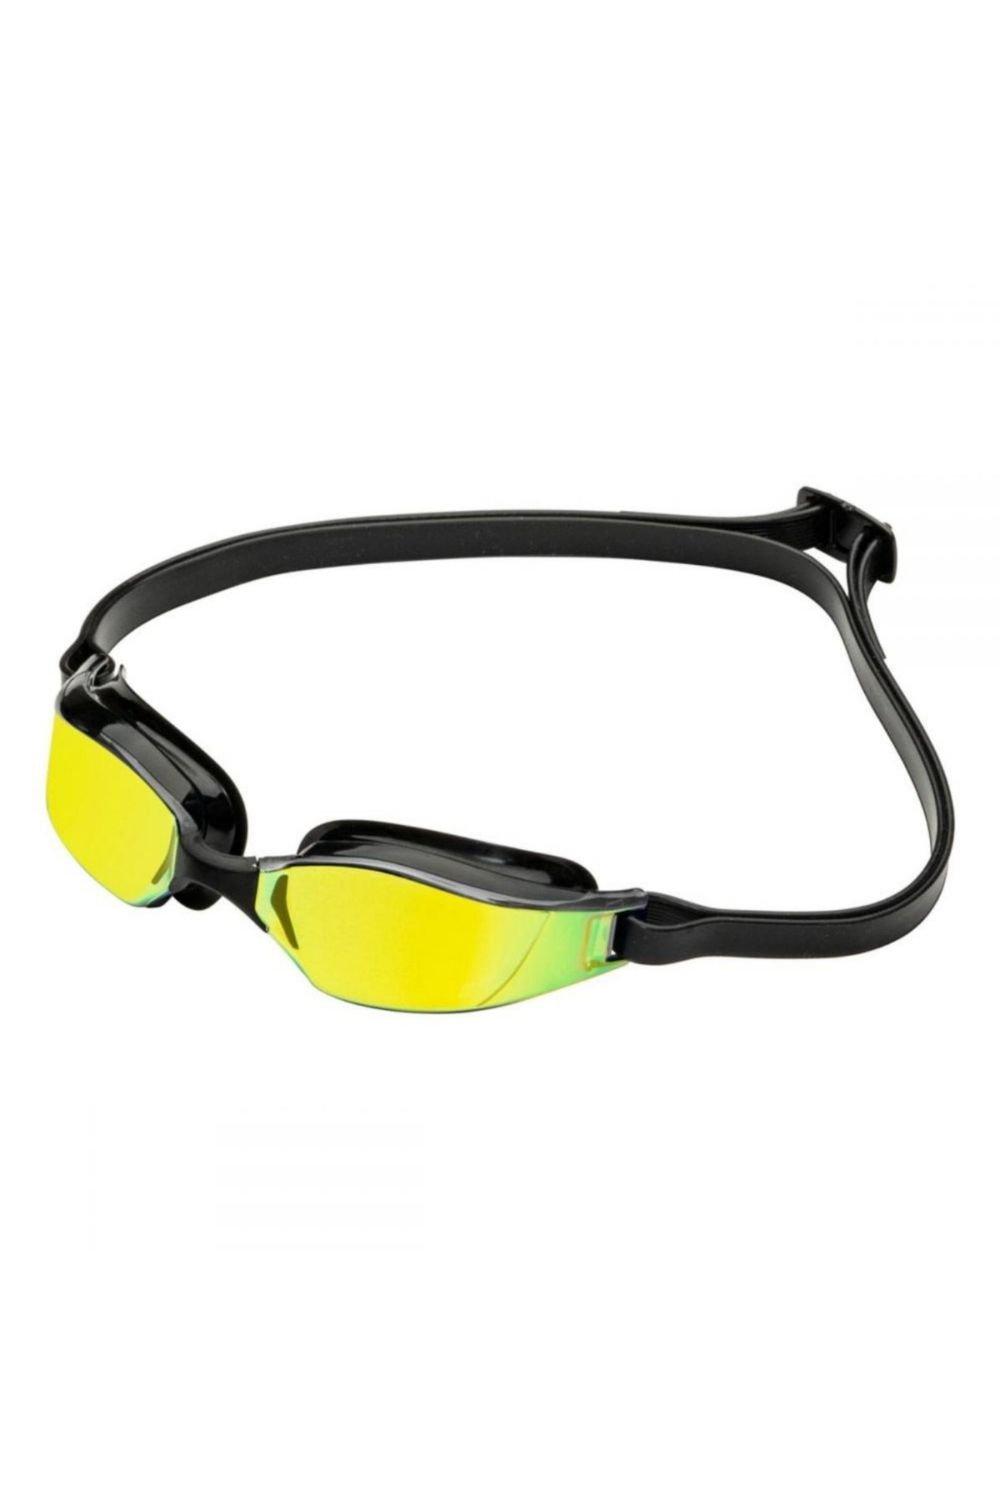 Титановые очки для плавания Xceed с зеркальными линзами Aquasphere, желтый очки для плавания детские очки для плавания прямые продажи с завода водонепроницаемые противотуманные детские силиконовые очки очки